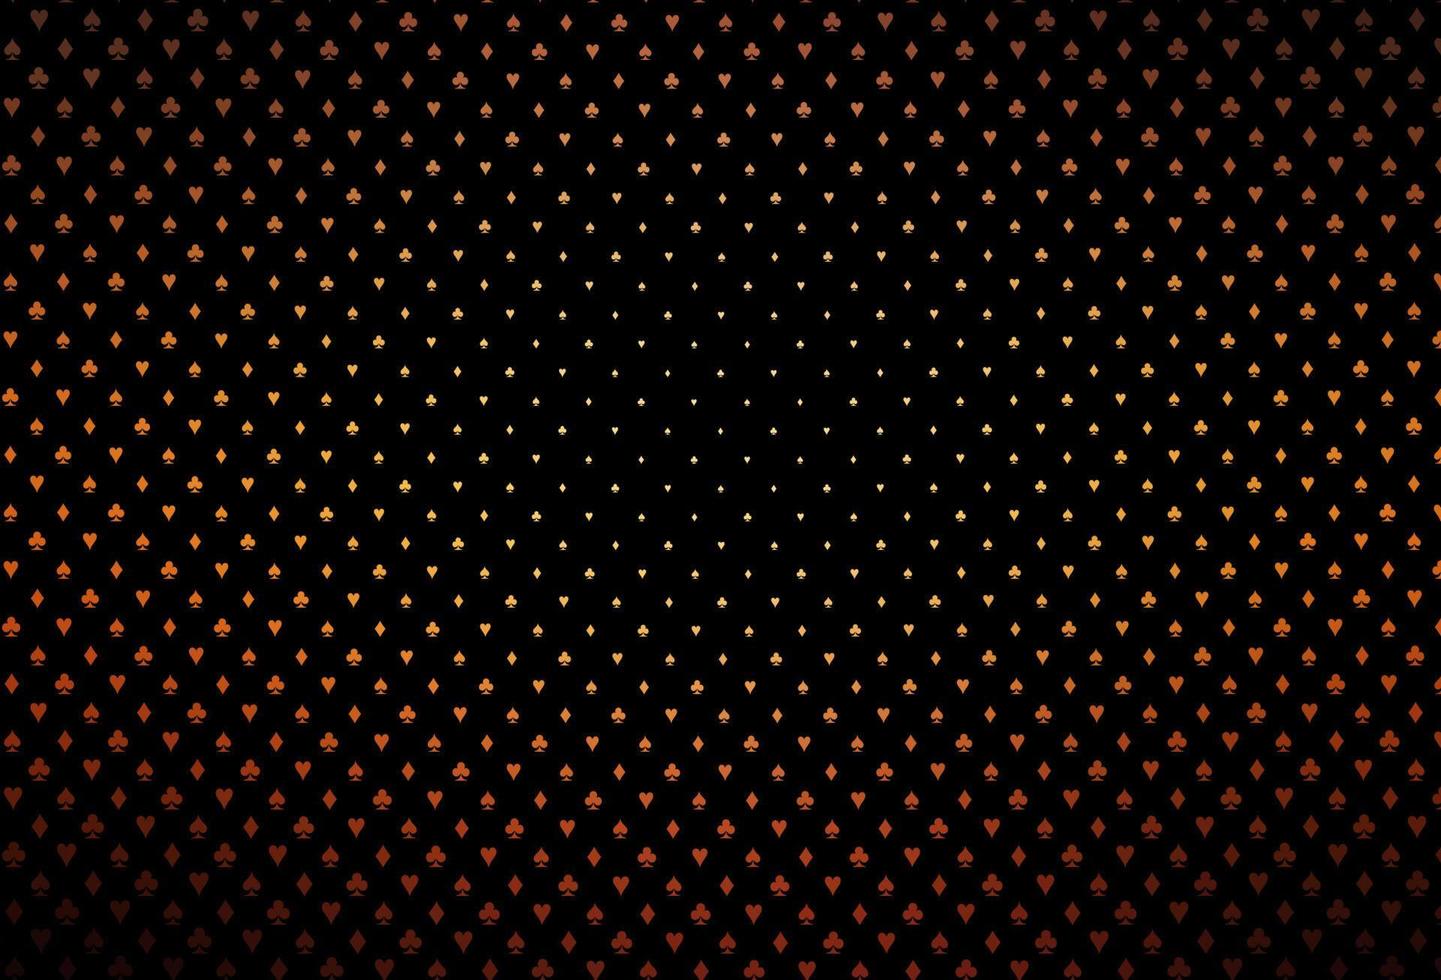 trama vettoriale arancione scuro con carte da gioco.